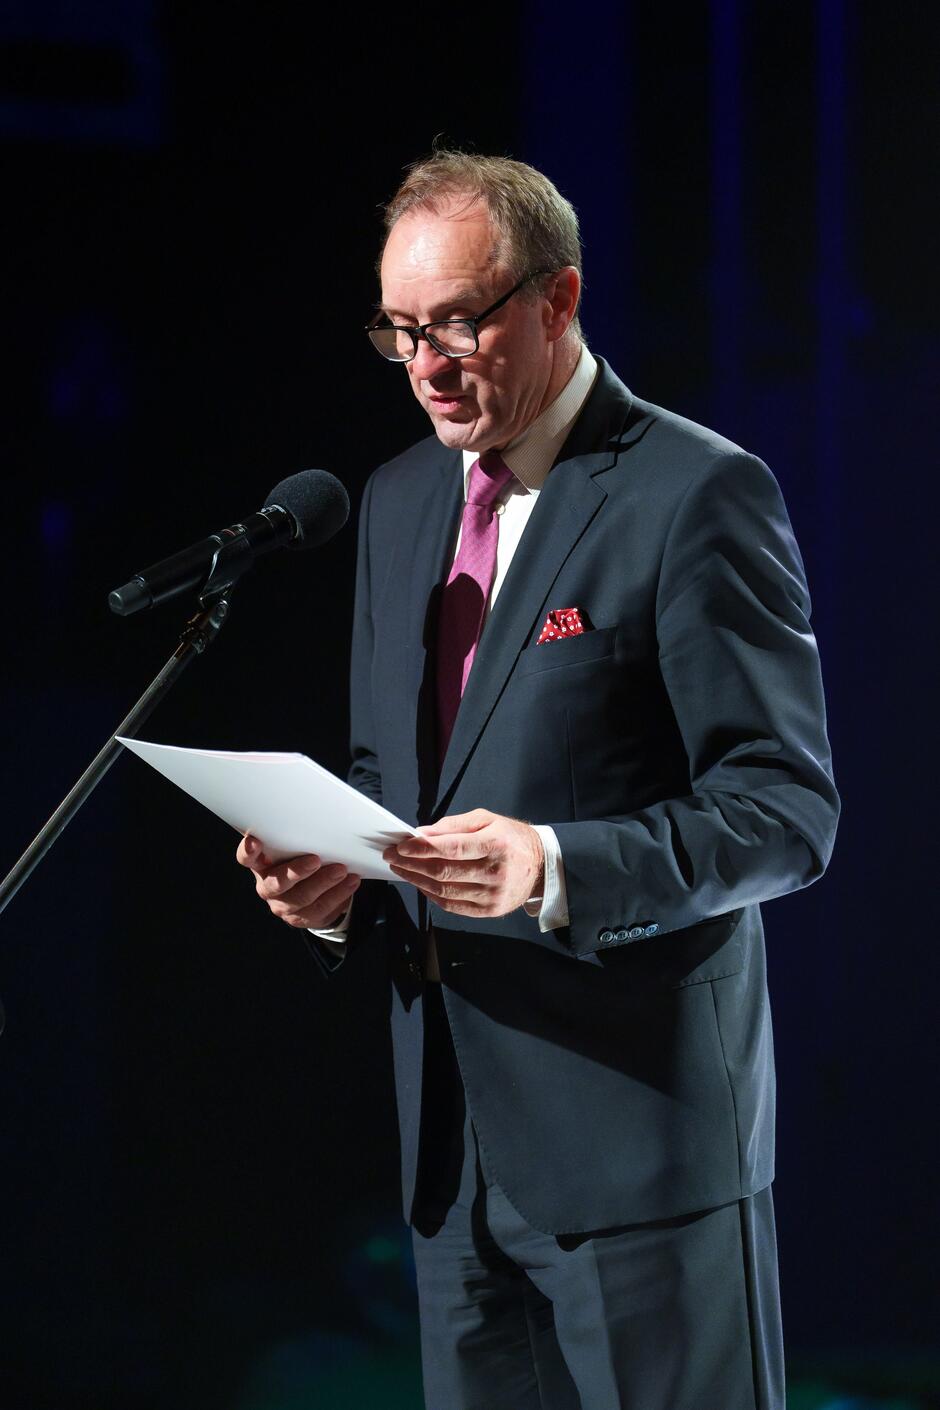 Na zdjęciu widać mężczyznę w eleganckim garniturze, z różowym krawatem i chusteczką w kieszeni, stojącego na scenie i przemawiającego do mikrofonu. Trzyma w rękach kartki z tekstem, a w tle widoczne jest ciemne oświetlenie sceniczne, co sugeruje oficjalne wystąpienie podczas jakiegoś wydarzenia